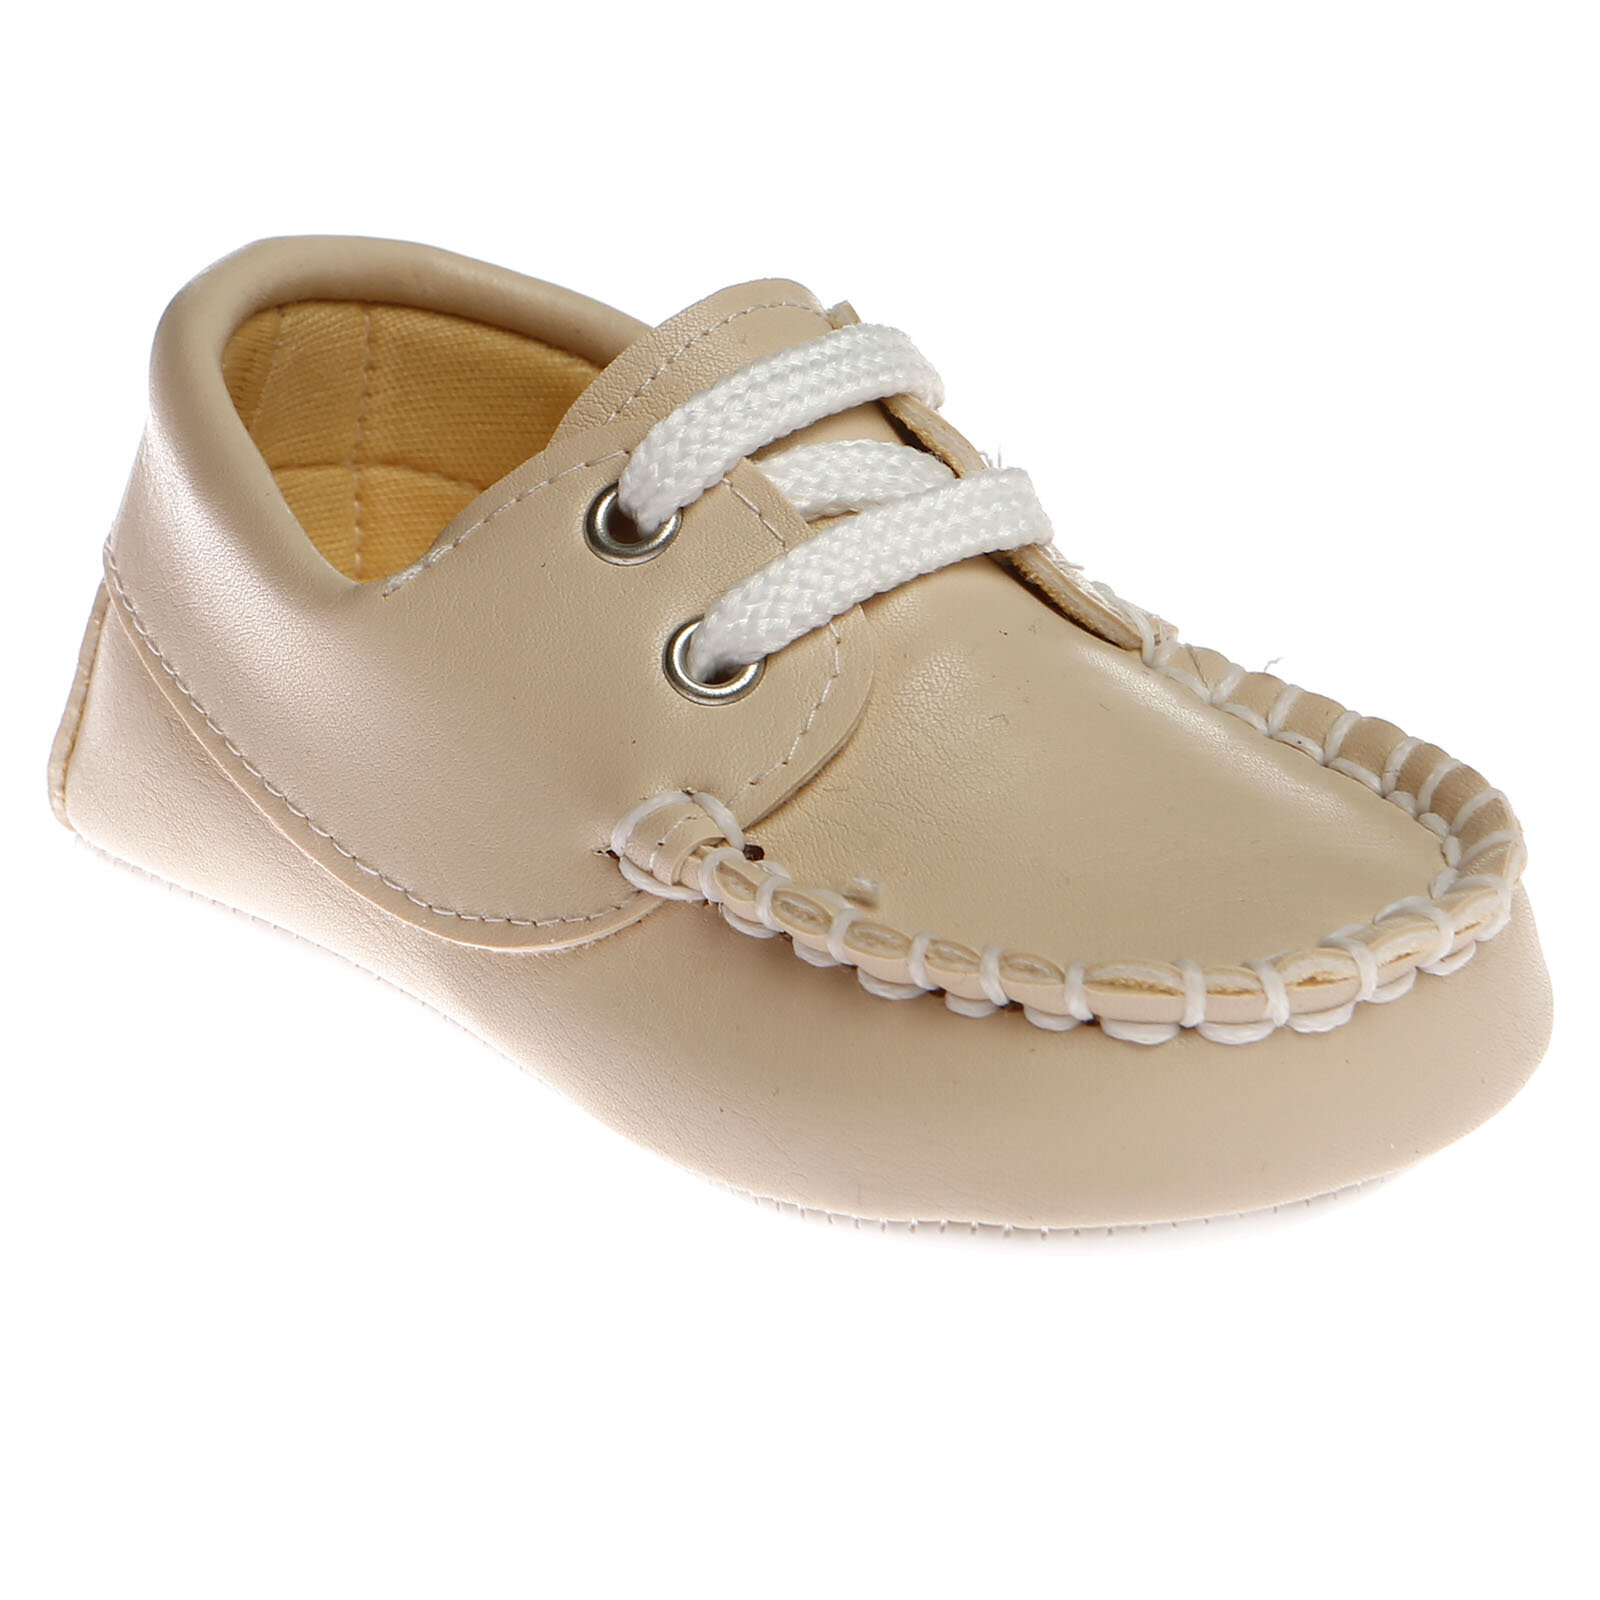 Klasik Model Patik Ayakkabı Erkek Bebek